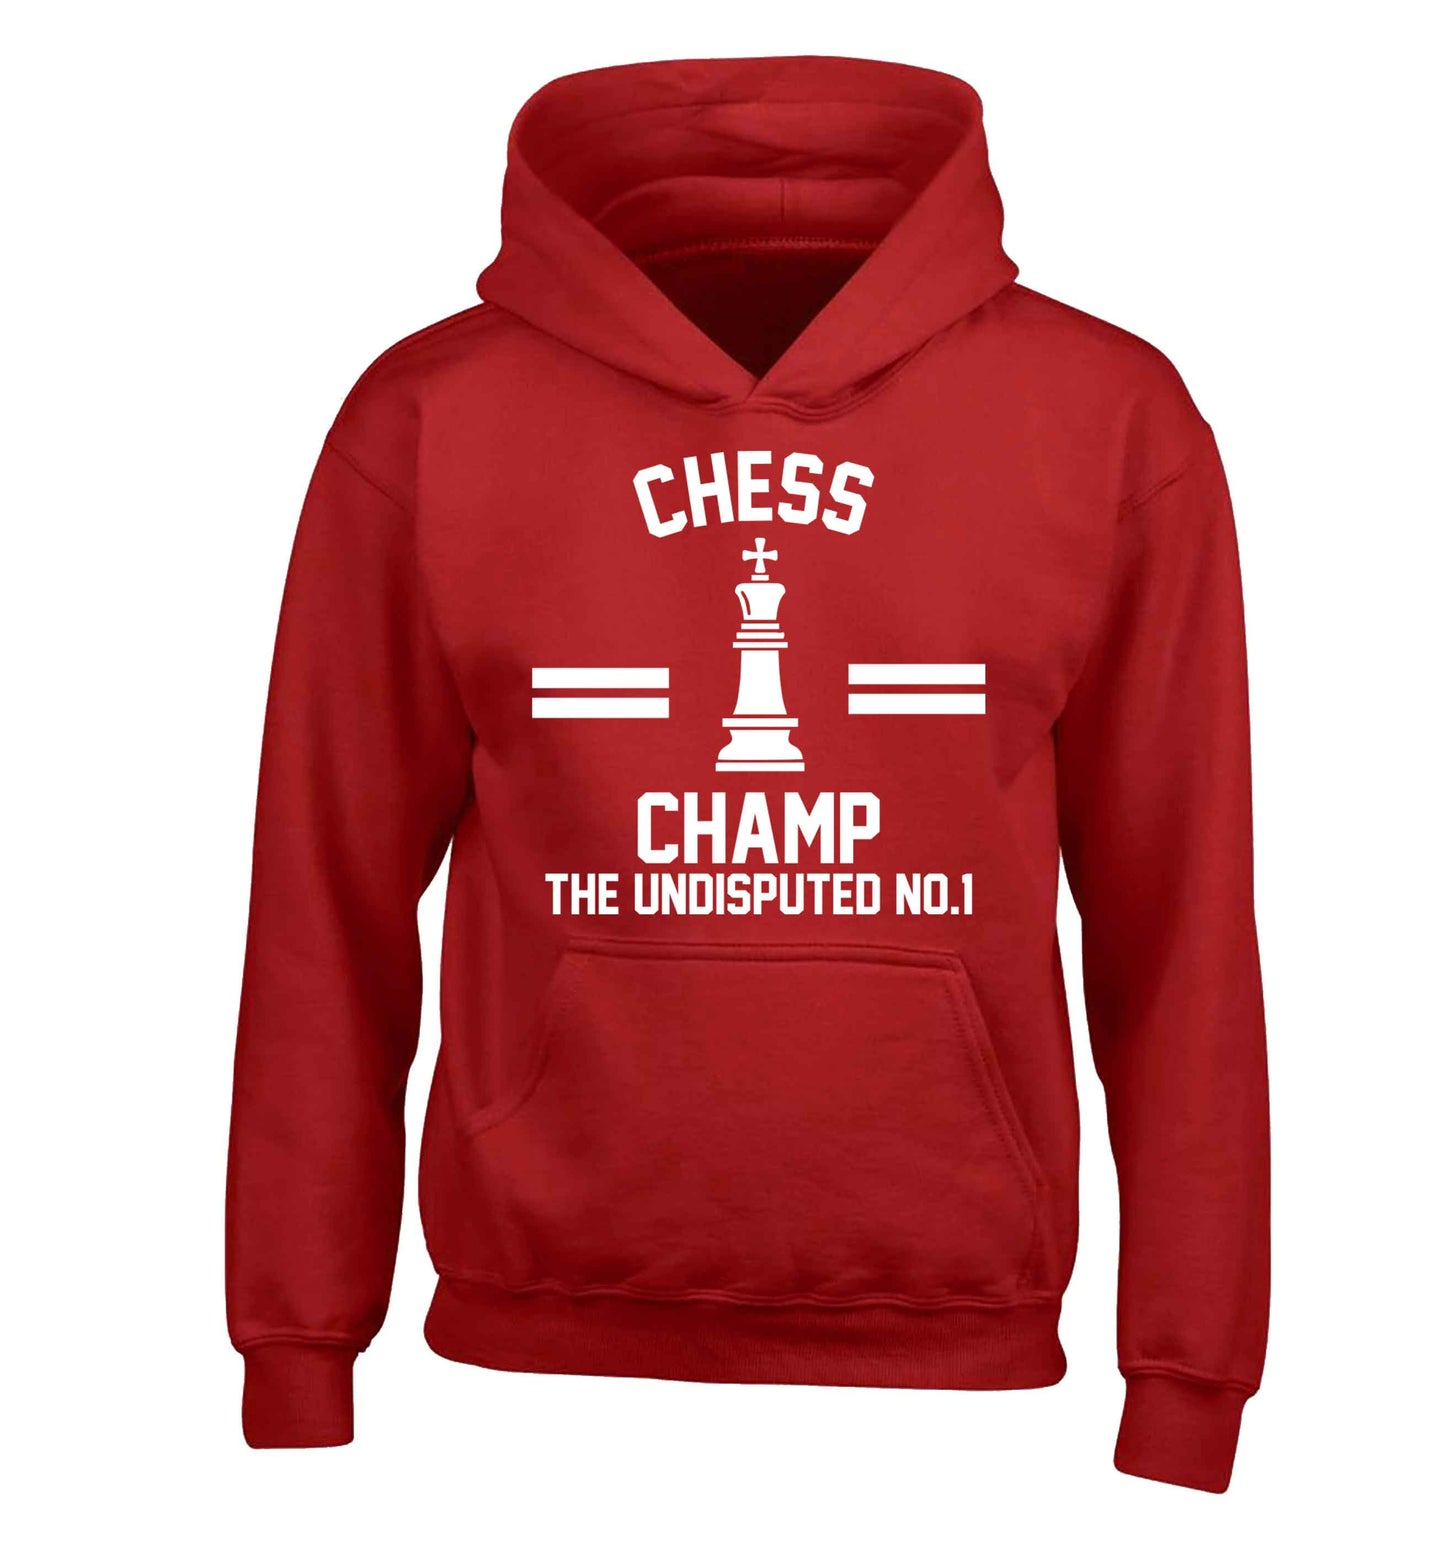 Undisputed chess championship no.1  children's red hoodie 12-13 Years